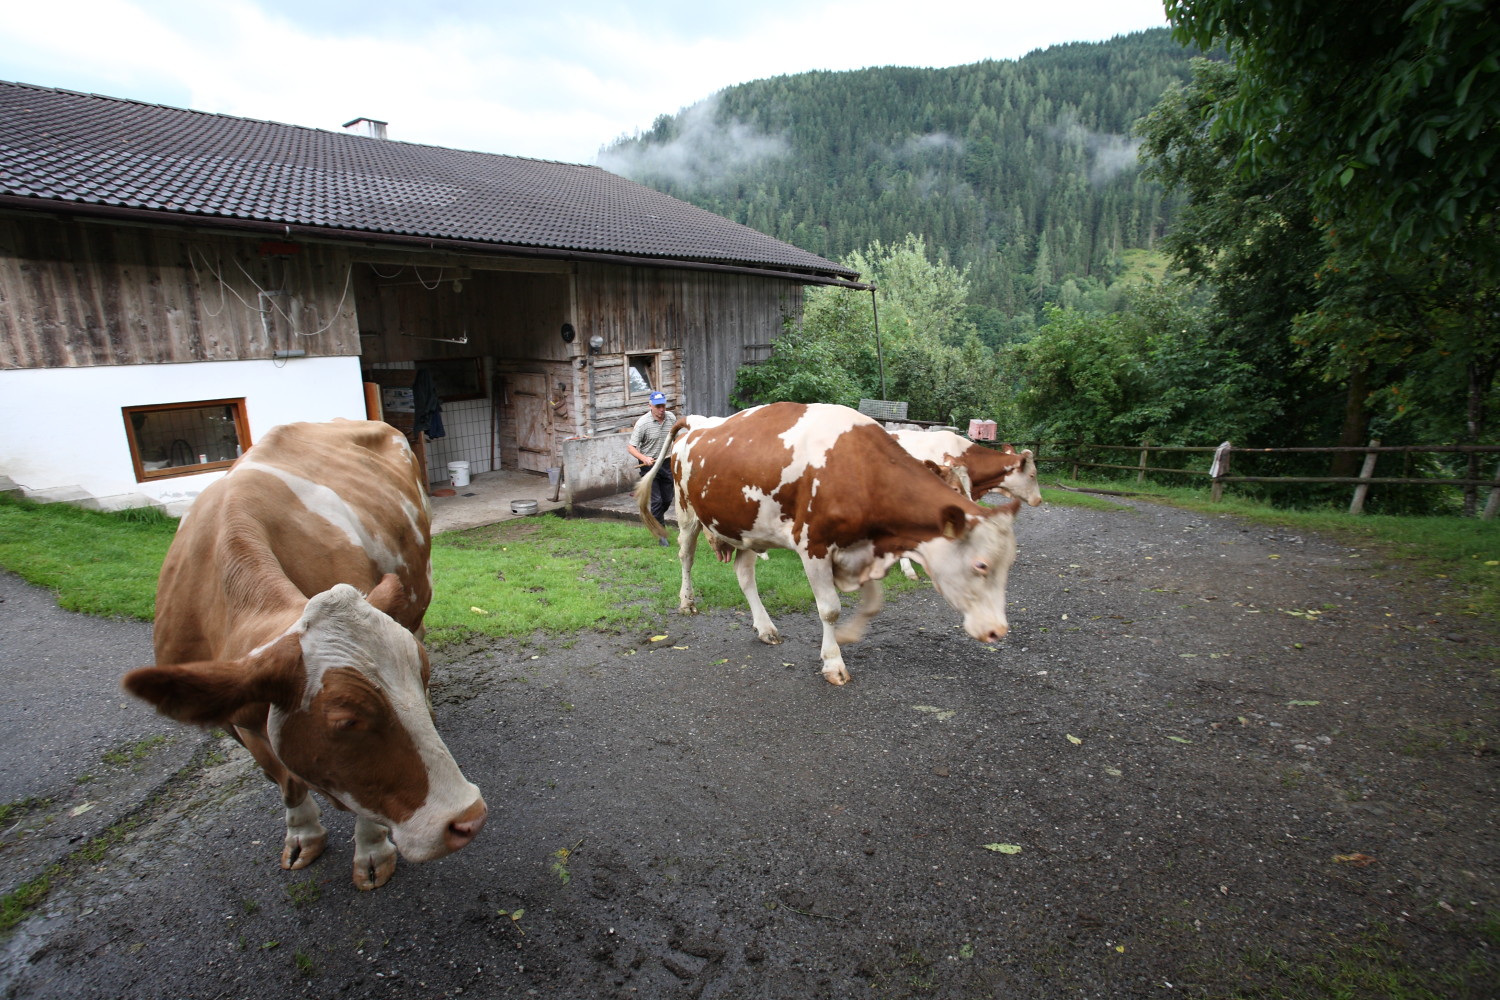 Hans guiding his cows to the Alm near Schloif Hof